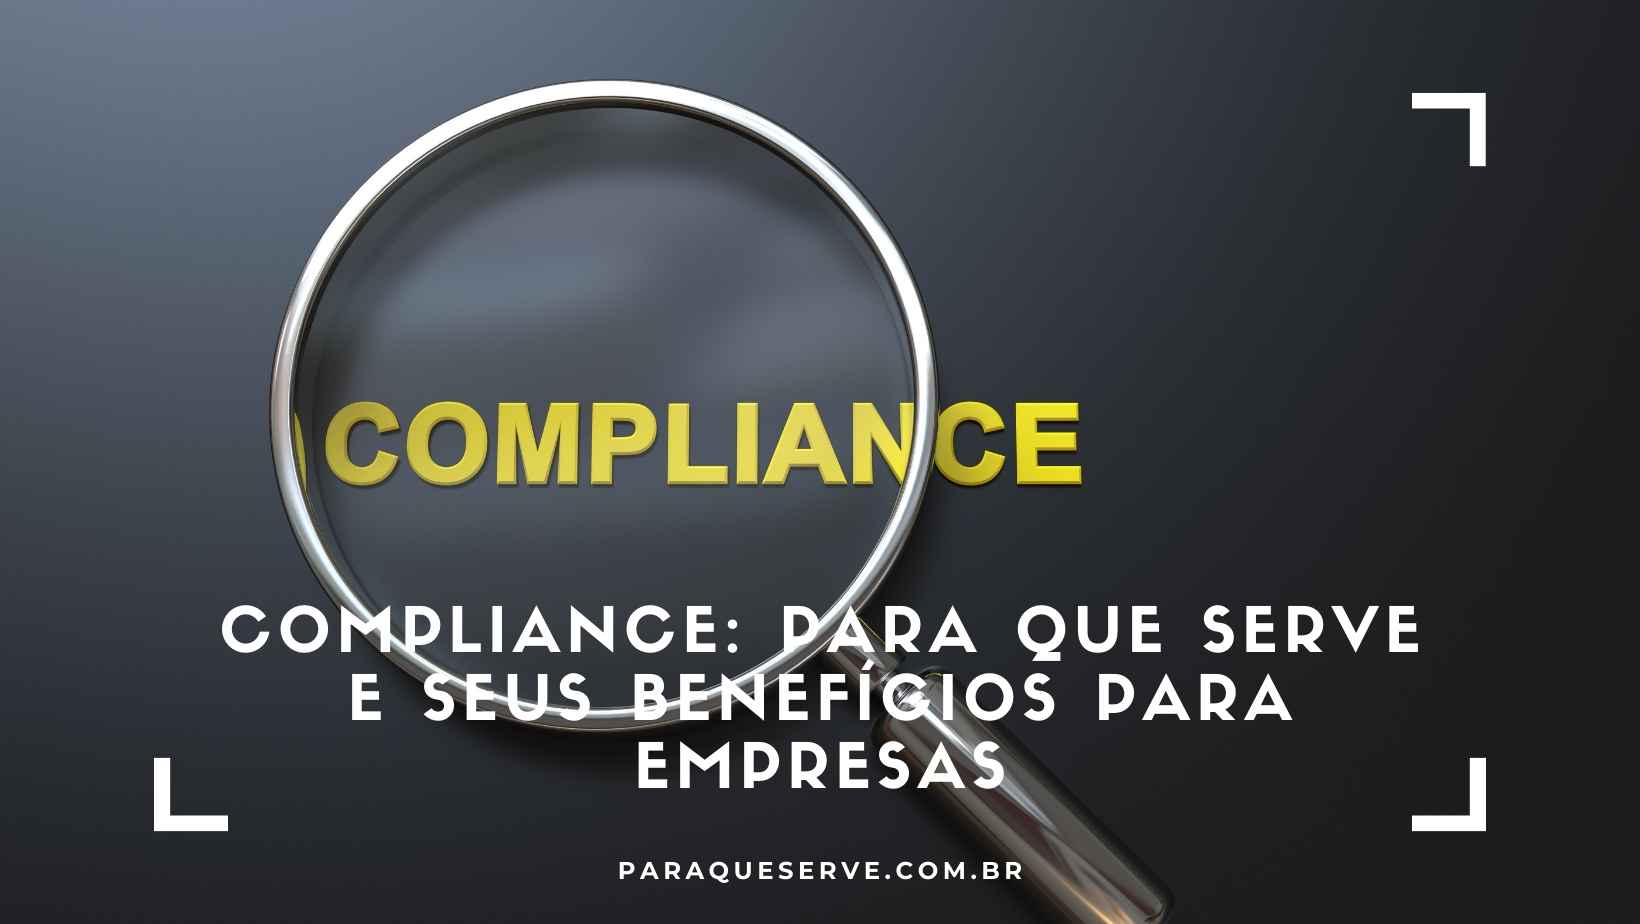 Compliance: para que serve e seus benefícios para empresas